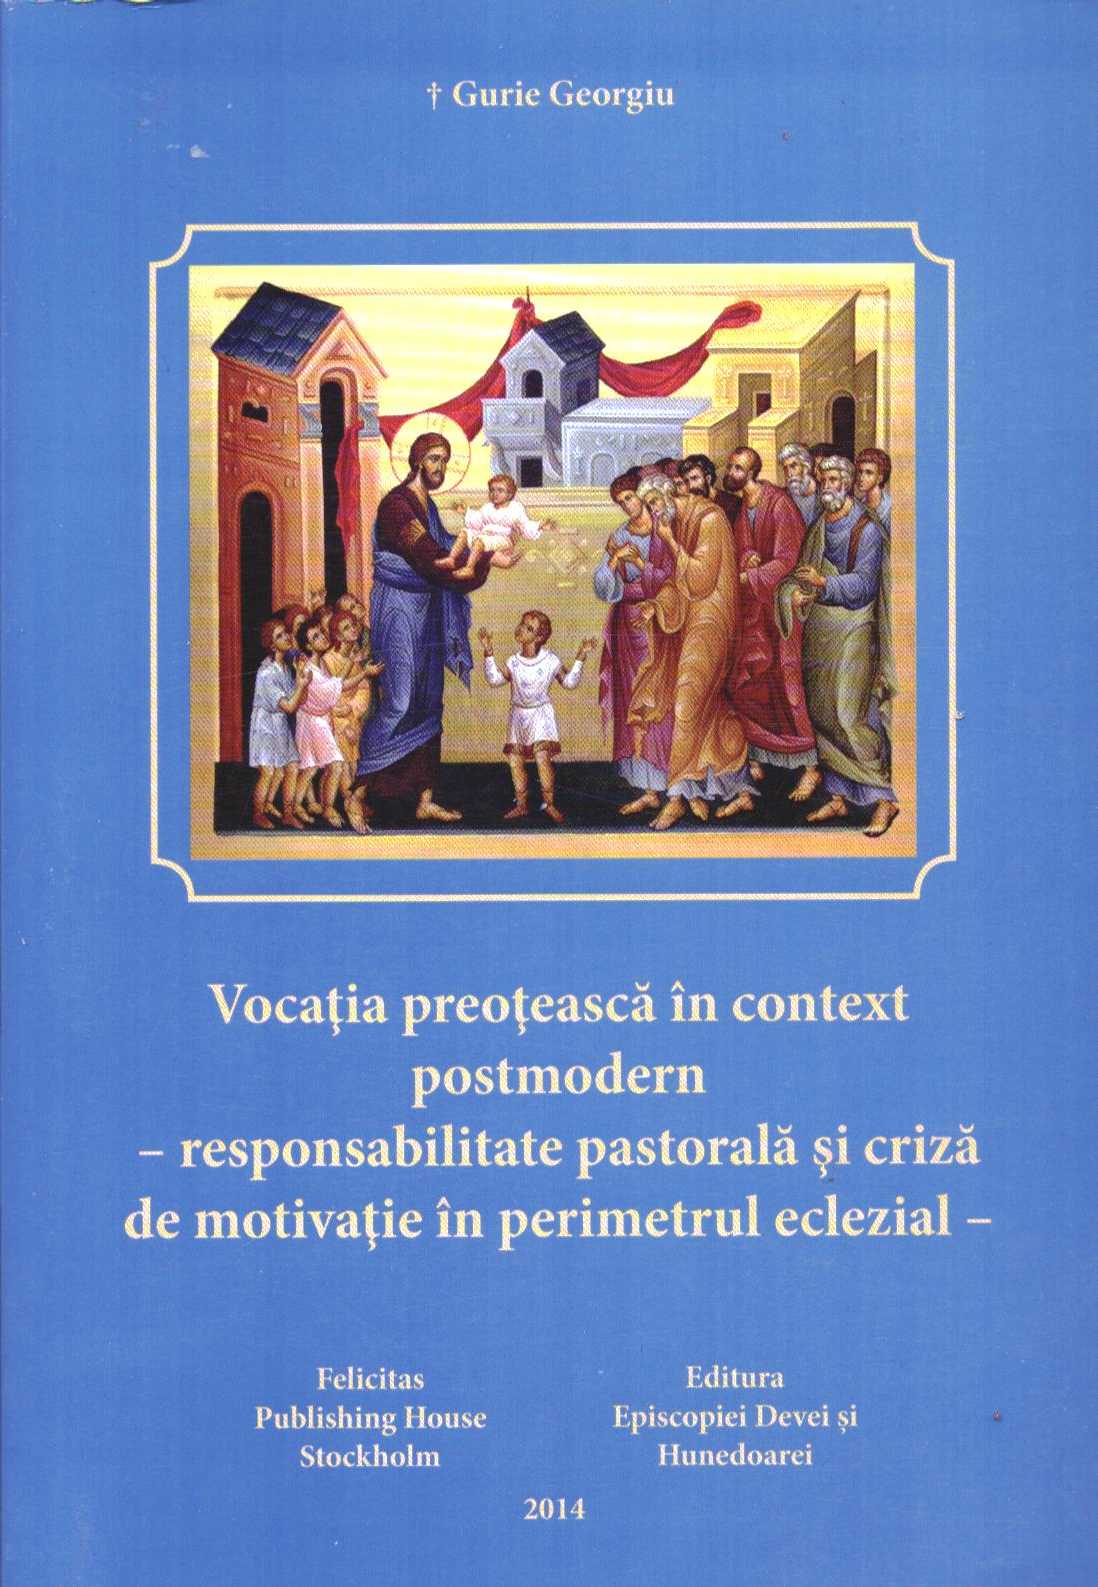 Vocatia preoteasca in context postmodern - Gurie Georgiu